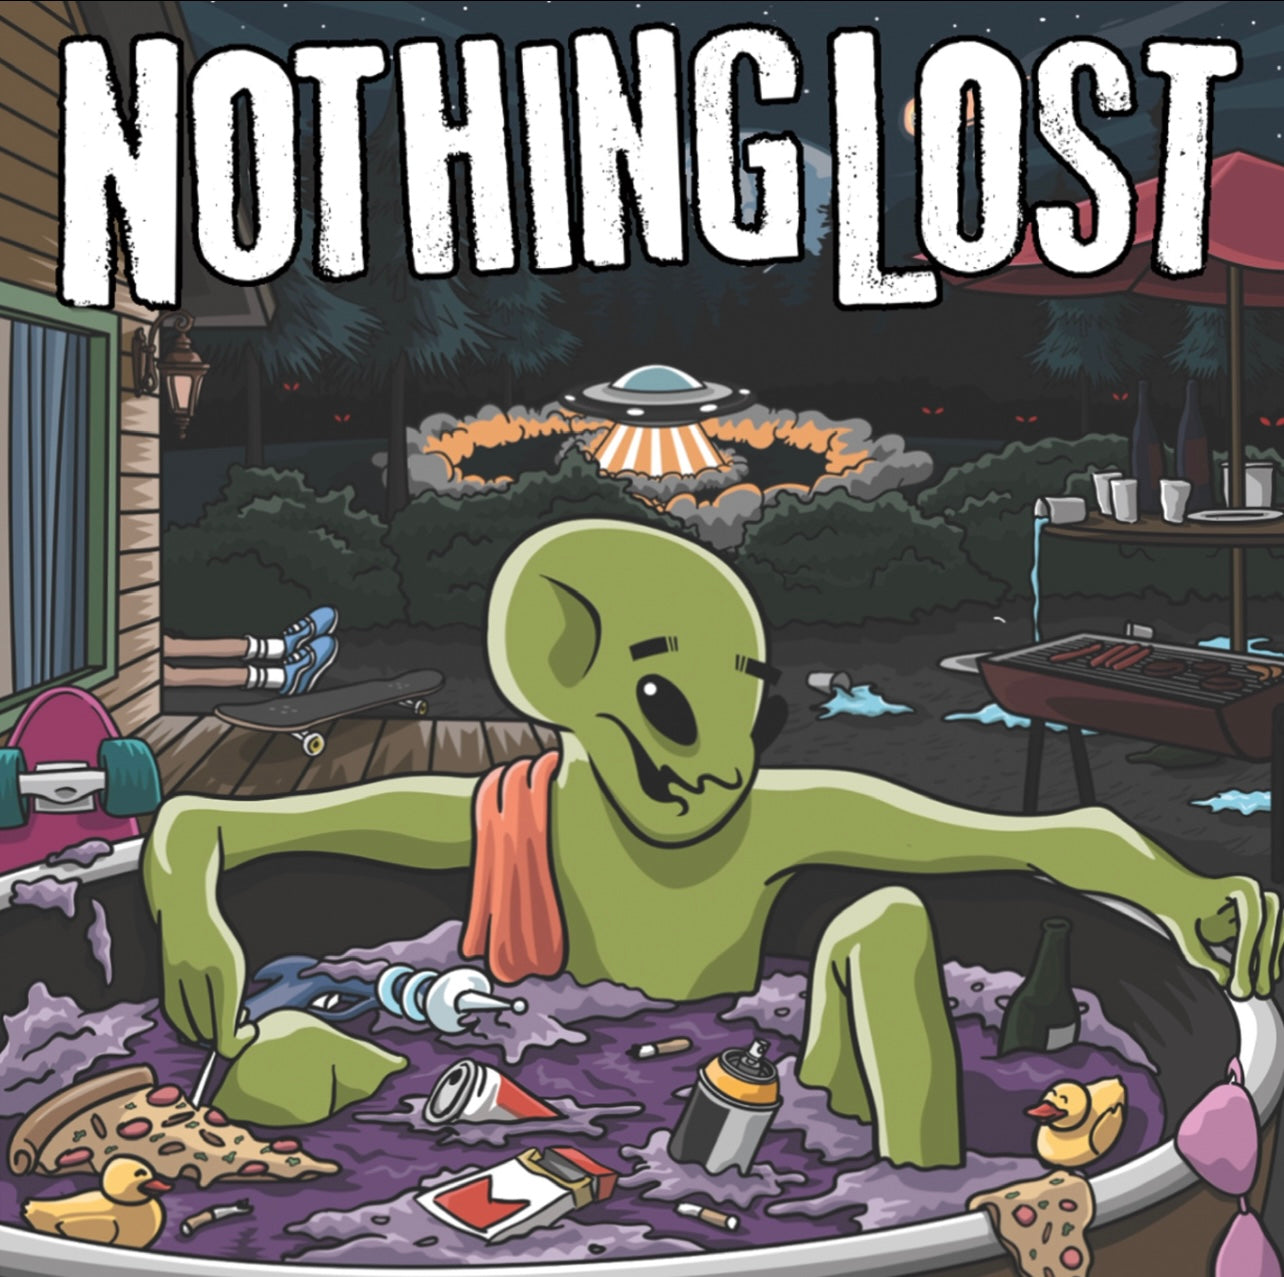 OMR-064 Nothing Lost (Vinyl/CD)